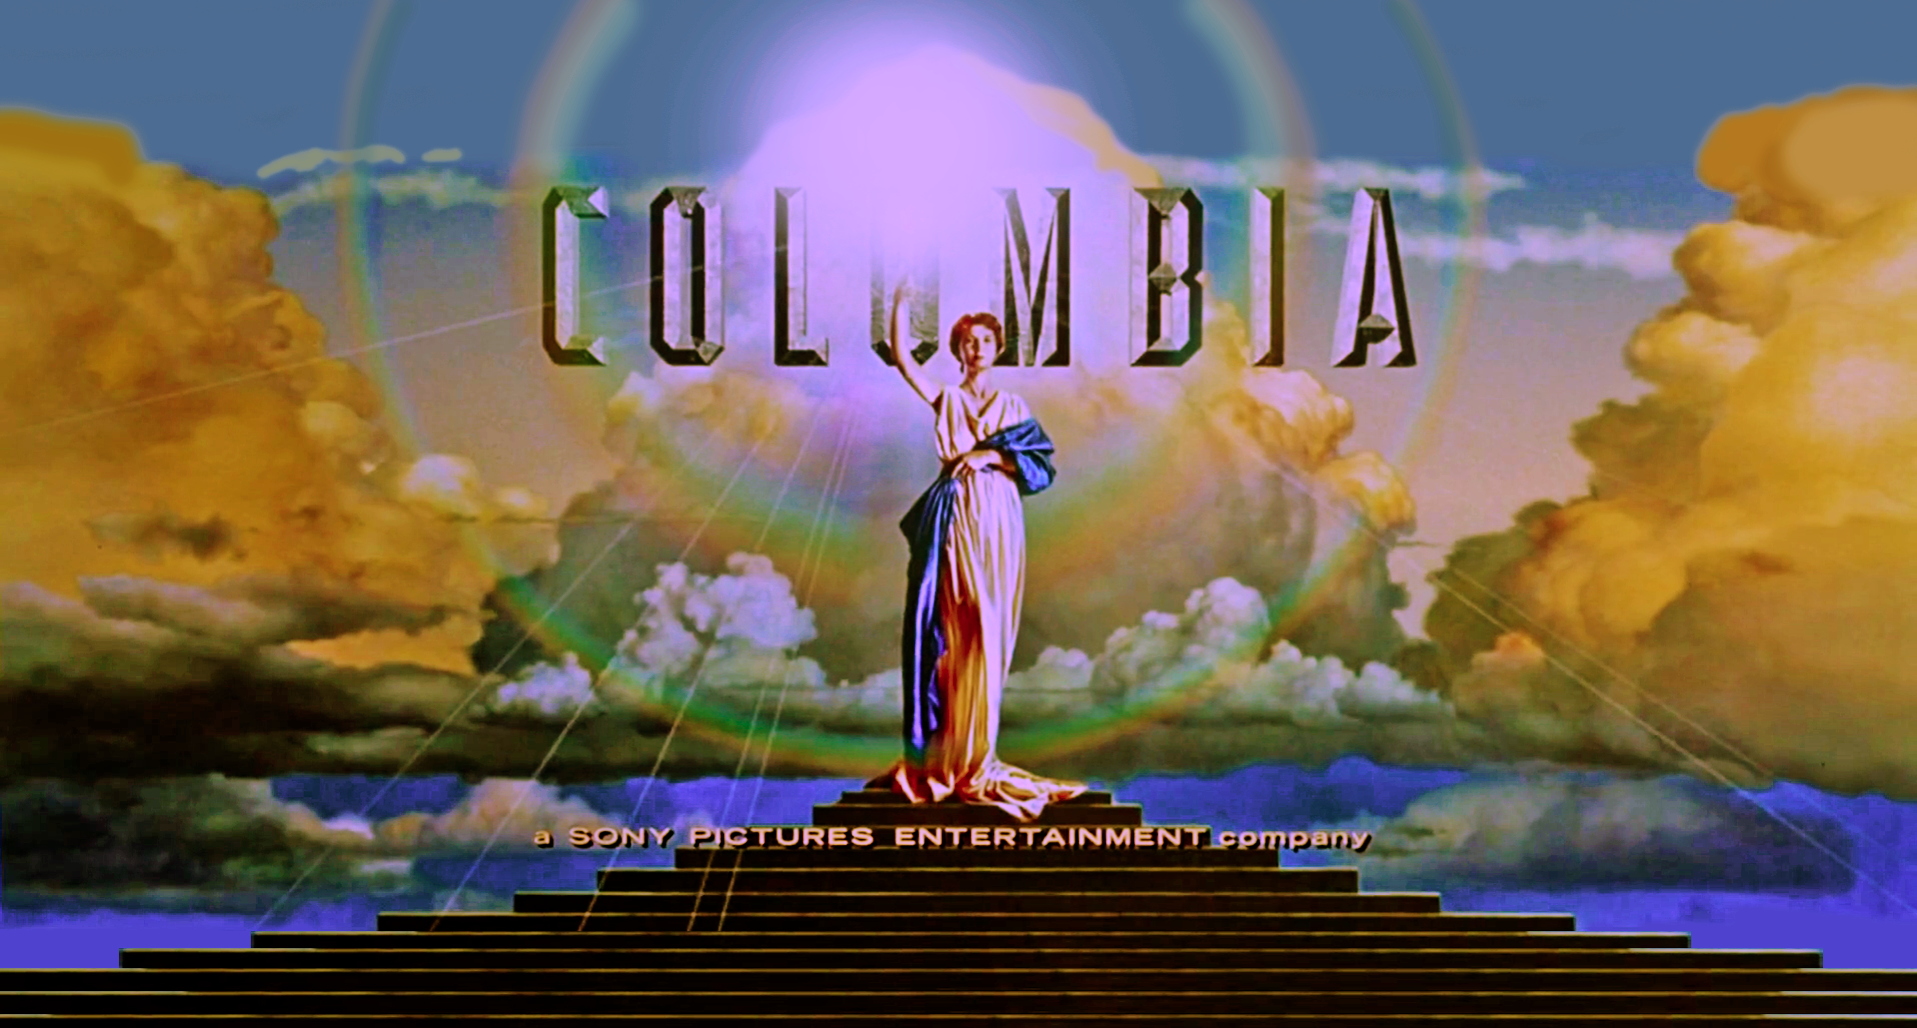 Коламбия пикчерз аквапарк. Коламбия Пикчерз. Коламбия Пикчерз логотип. Columbia pictures 1993. Коламбия Пикчерз трек.